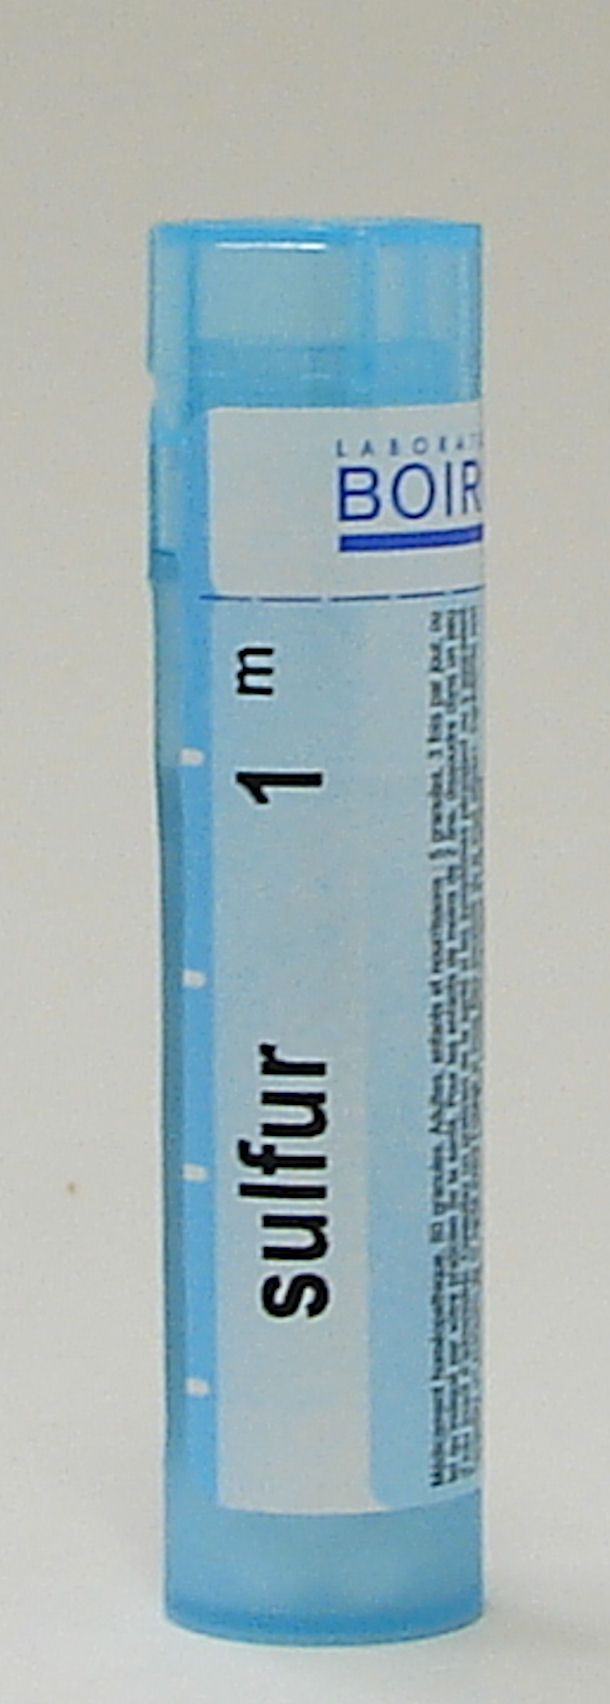 Sulfur, 1M sublingual pellets (Boiron)